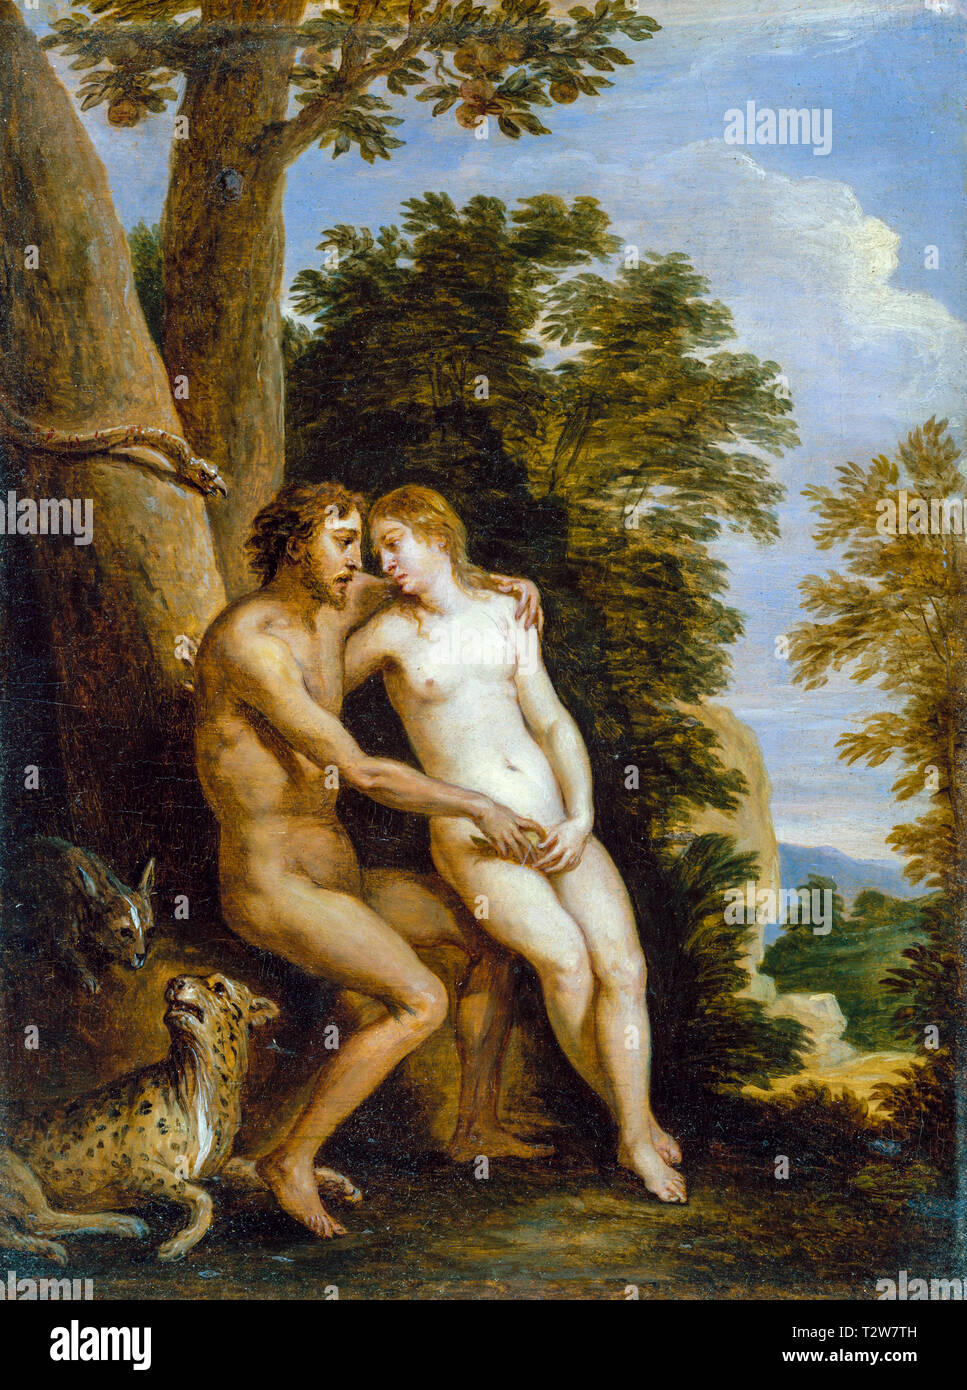 Adam et Eve au paradis, peinture par David Teniers le plus jeune, vers 1650 Banque D'Images